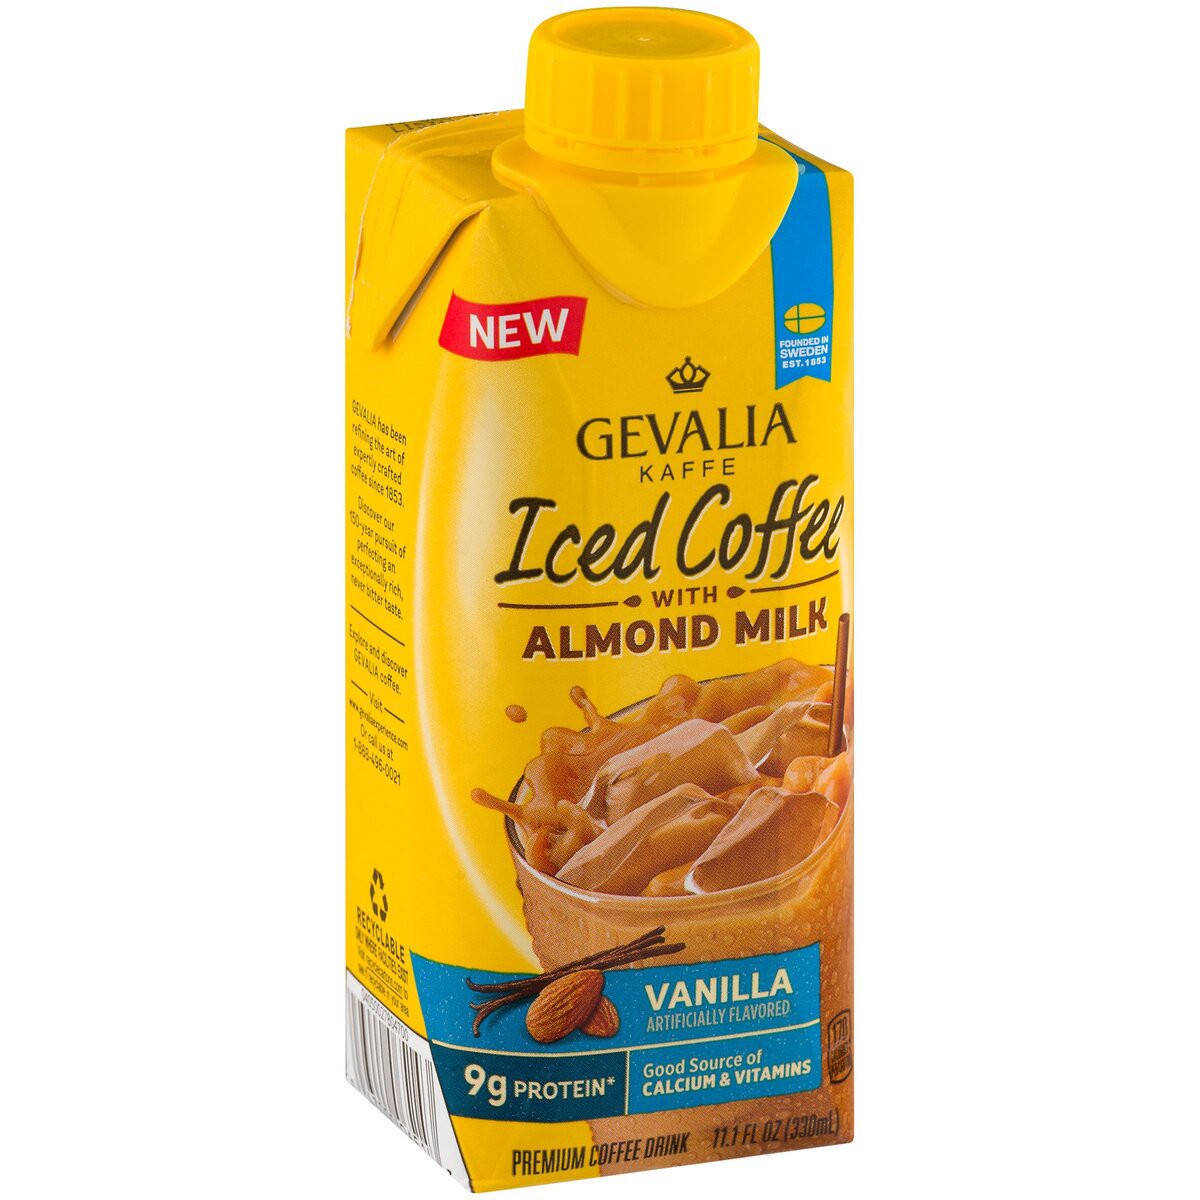 slide 2 of 7, Gevalia Vanilla Iced Coffee with Almond Milk, 11.1 oz